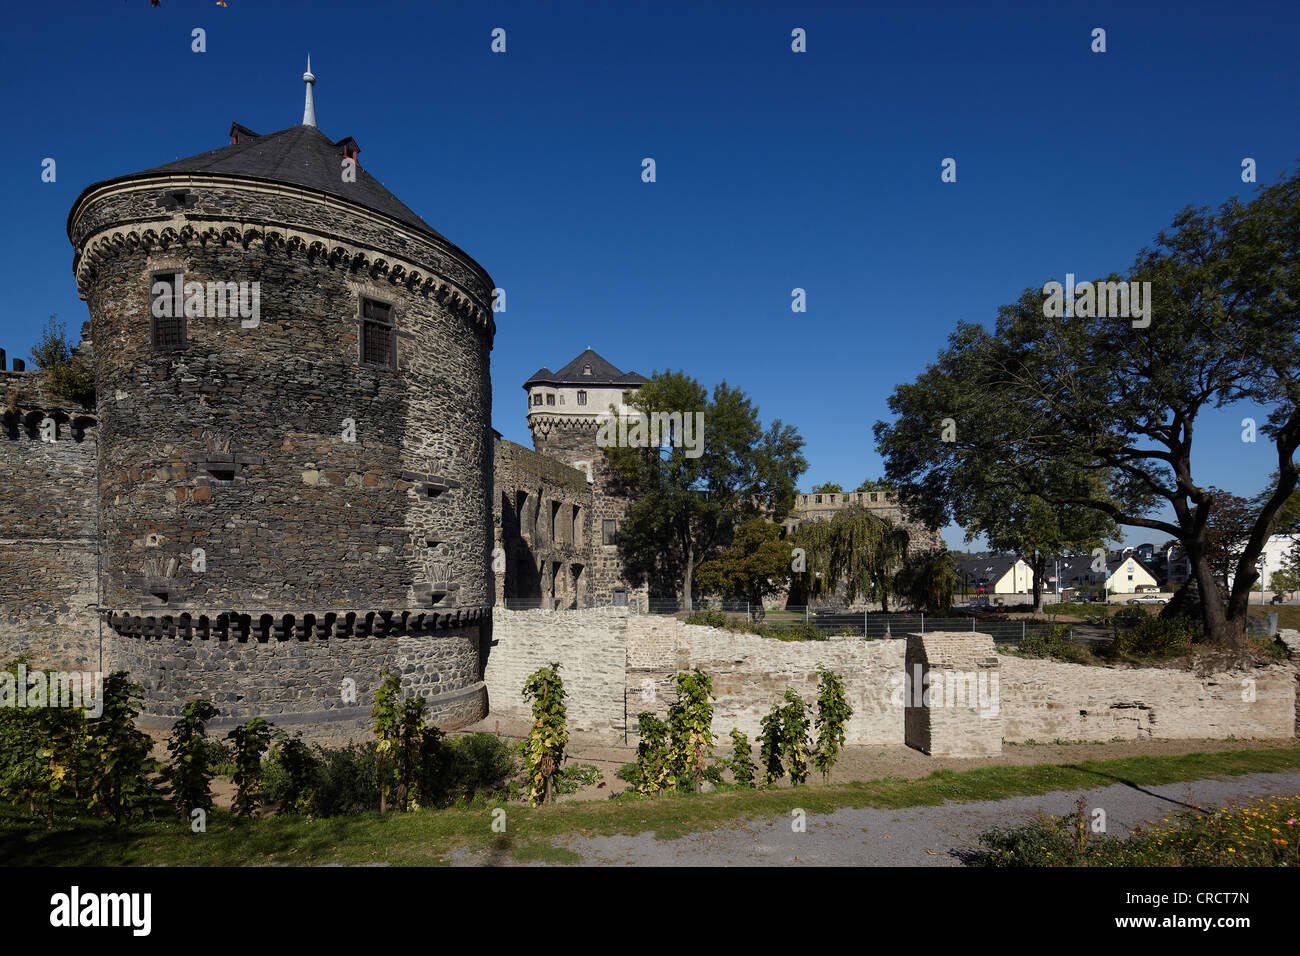 Les murs de la ville historique d'Andernach, Rhénanie-Palatinat, Allemagne, Europe Banque D'Images